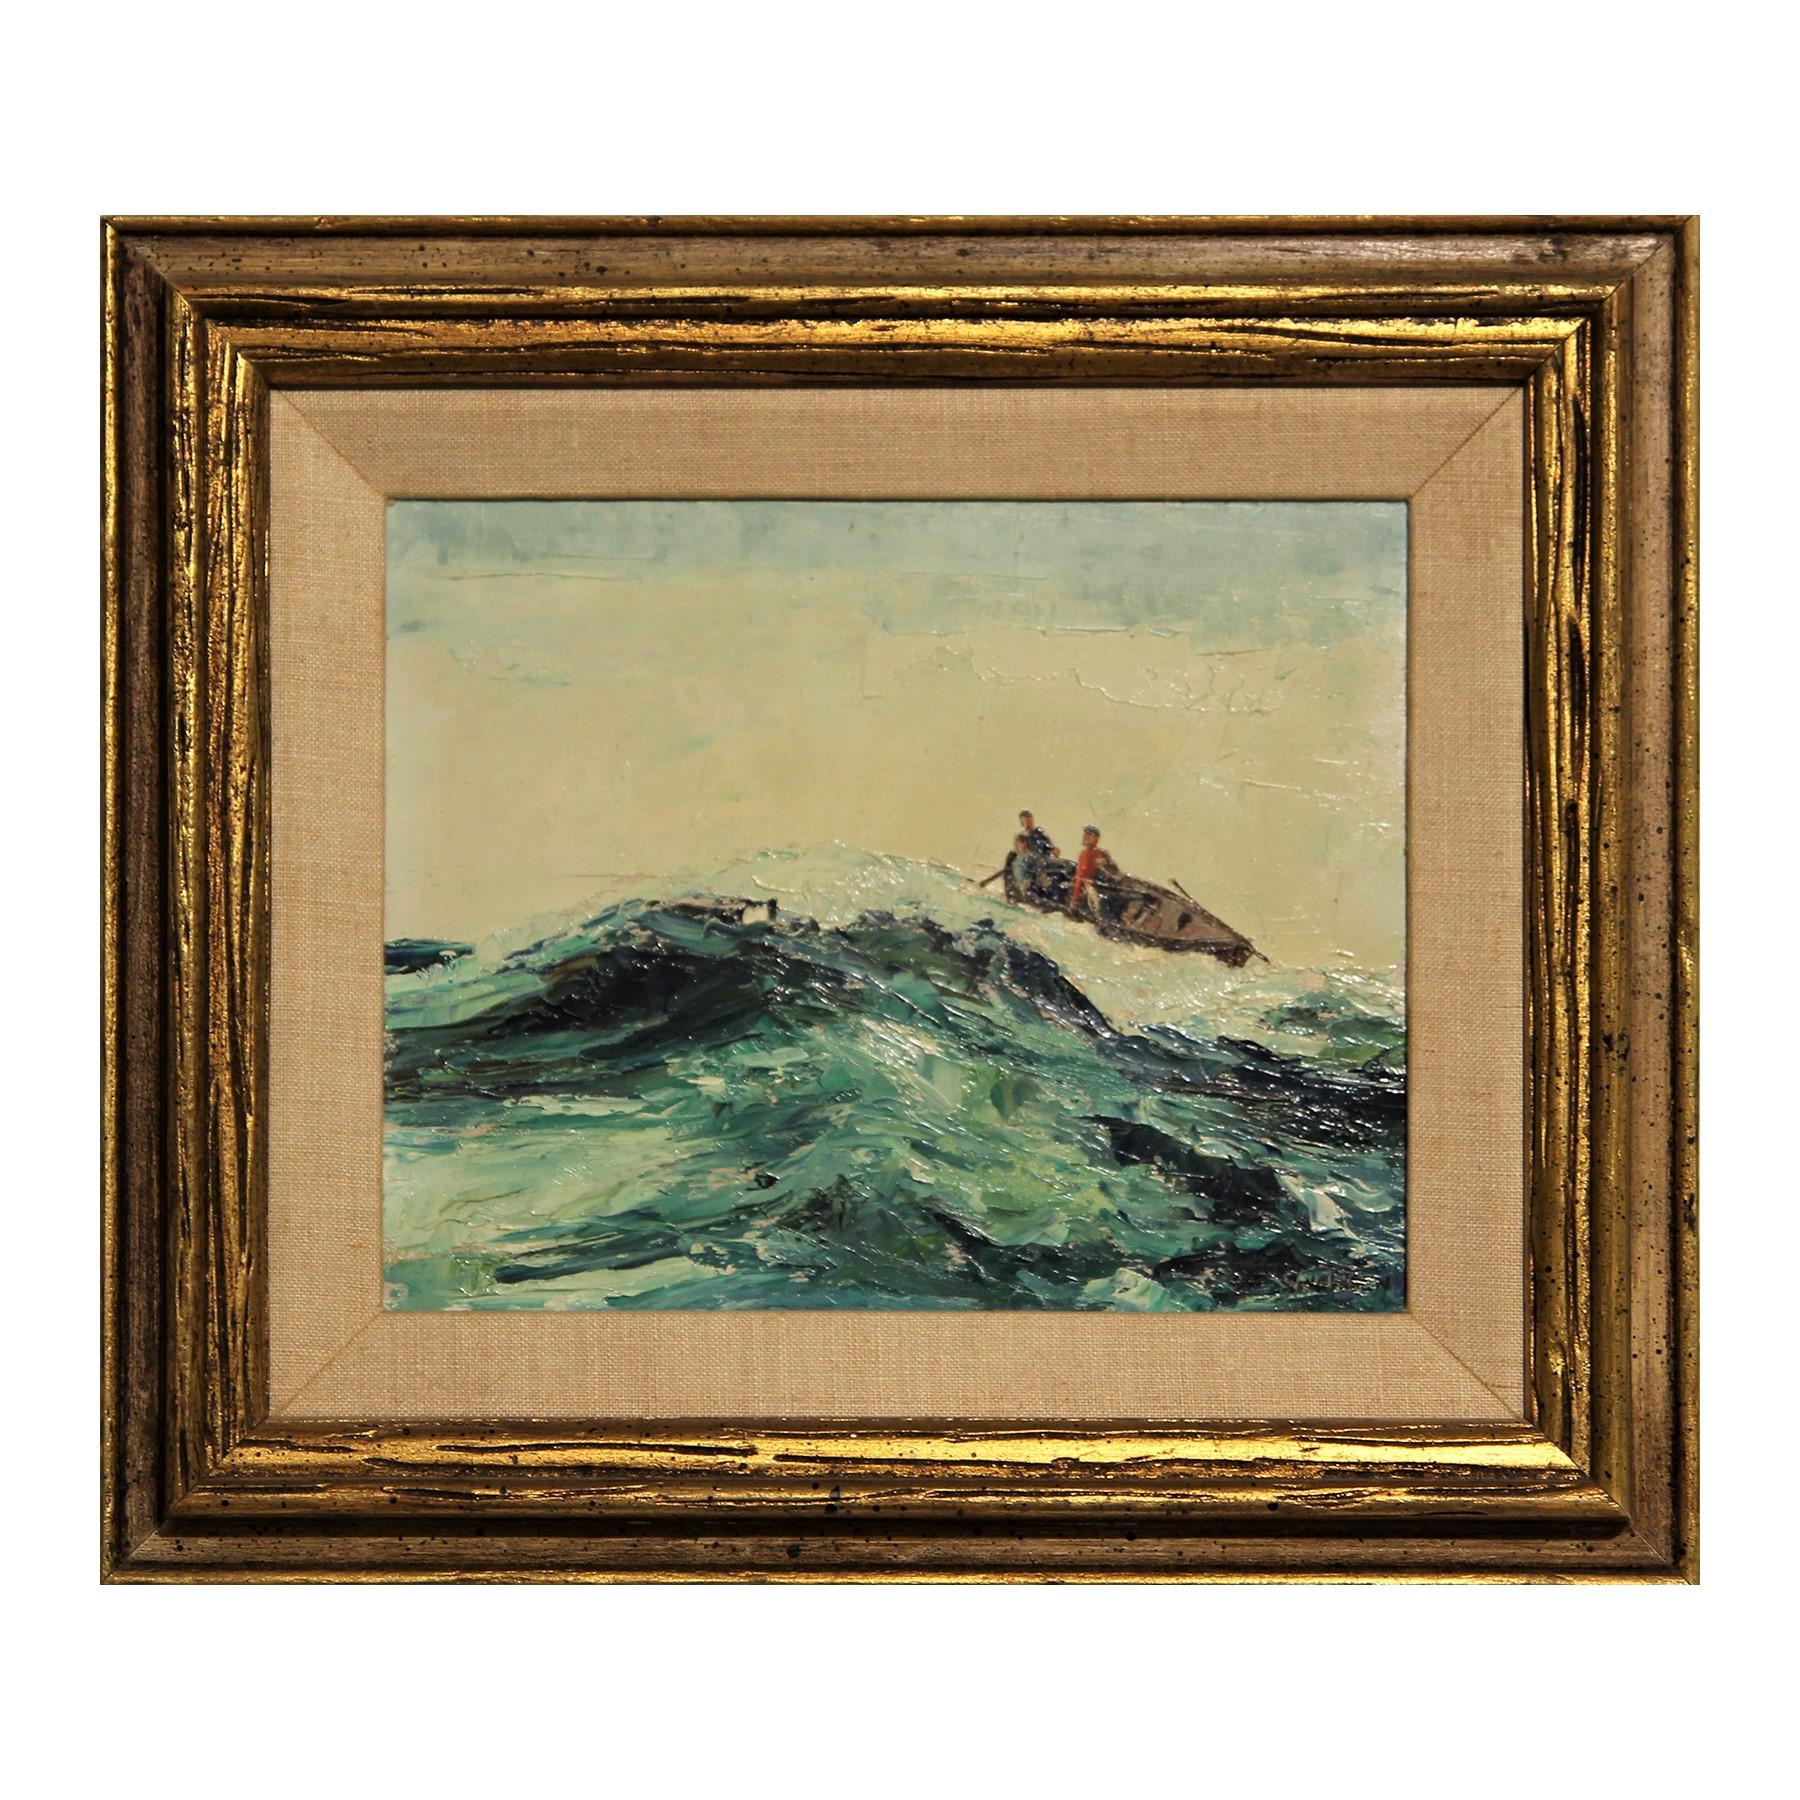 Landscape Painting Chester Dixon Snowden - Paysage marin impressionniste aux tons bleus avec peinture de paysage de pêcheurs